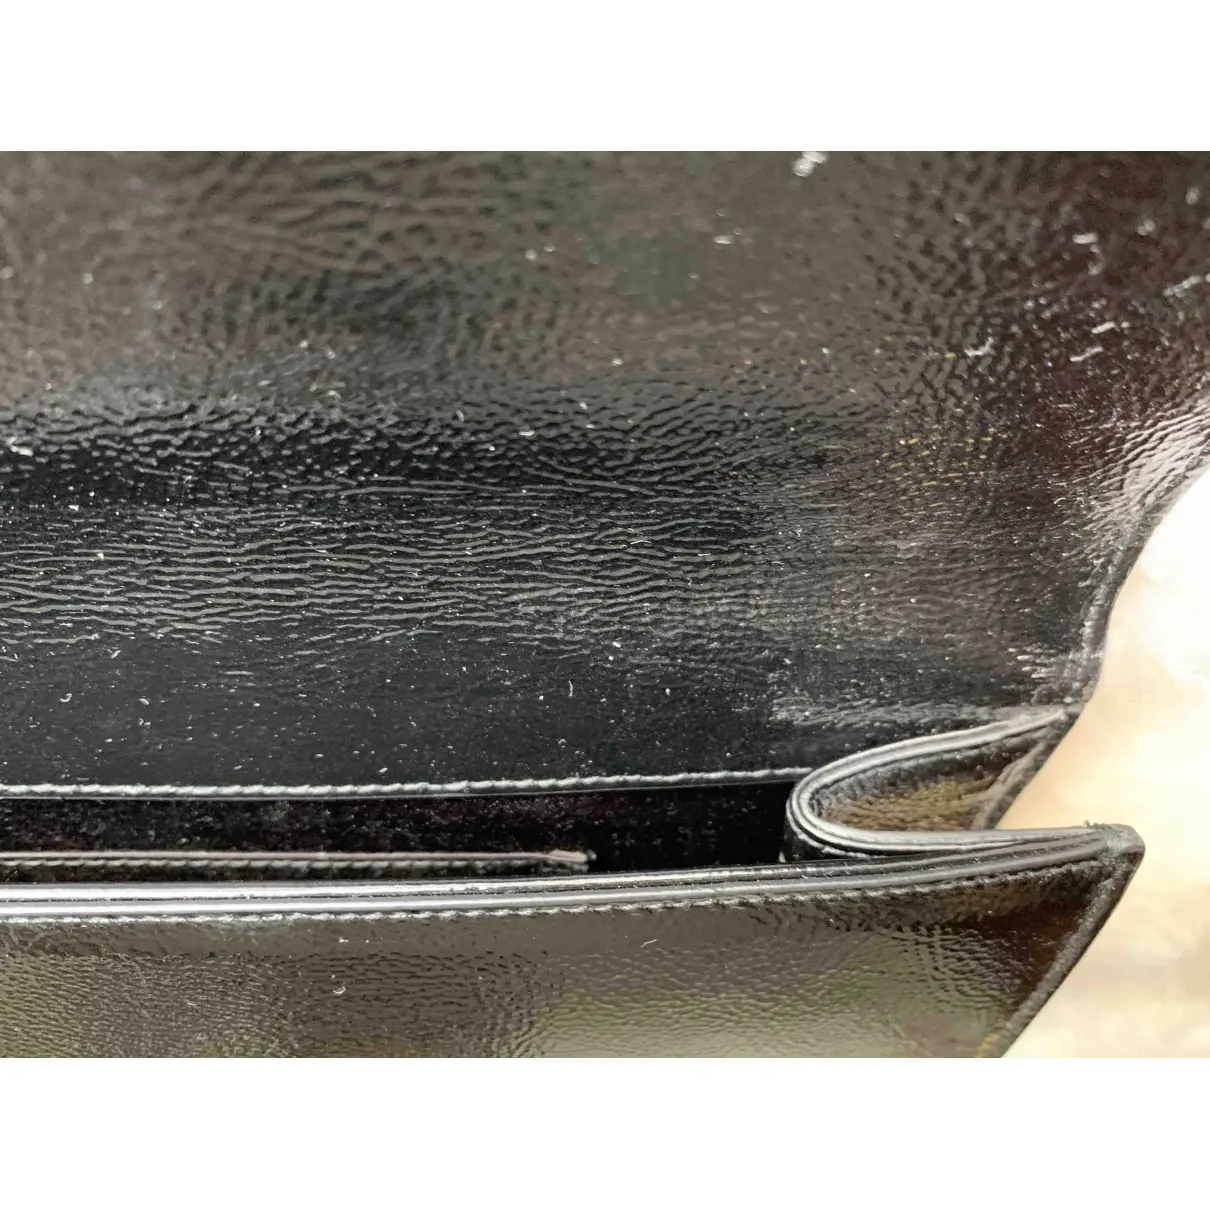 Belle de Jour patent leather clutch bag Yves Saint Laurent